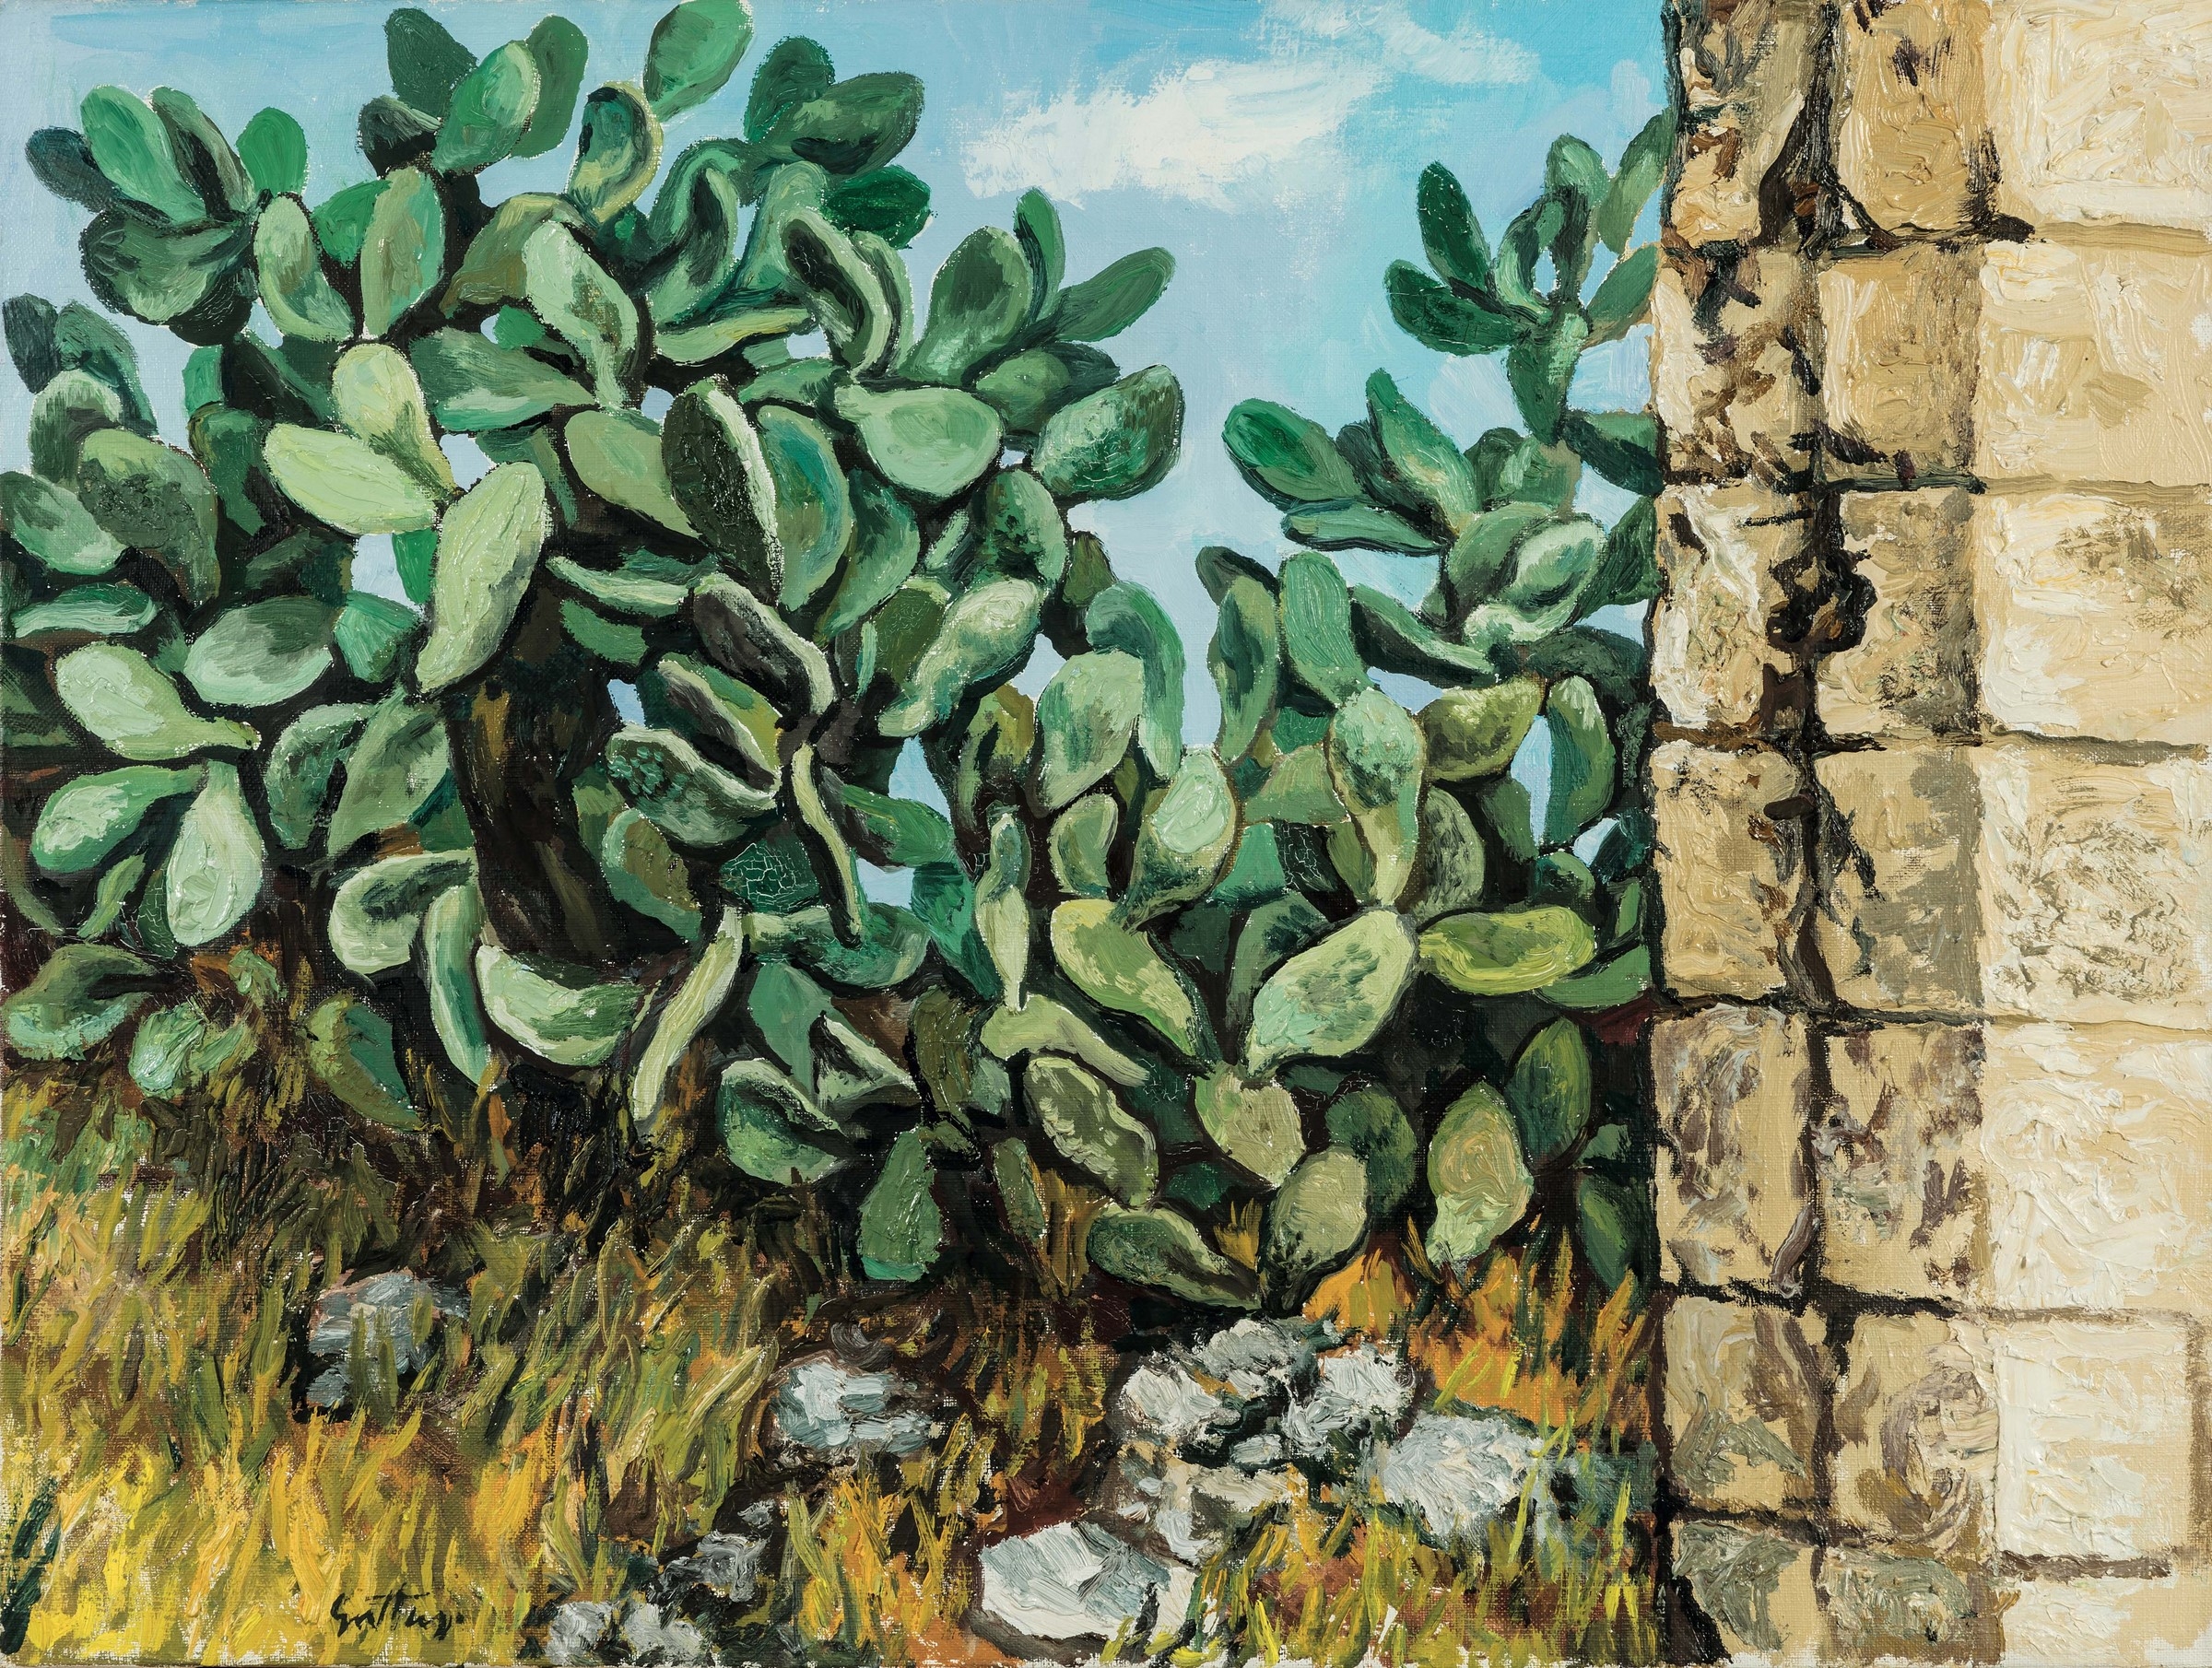 Cactus by Renato Guttuso, 1976